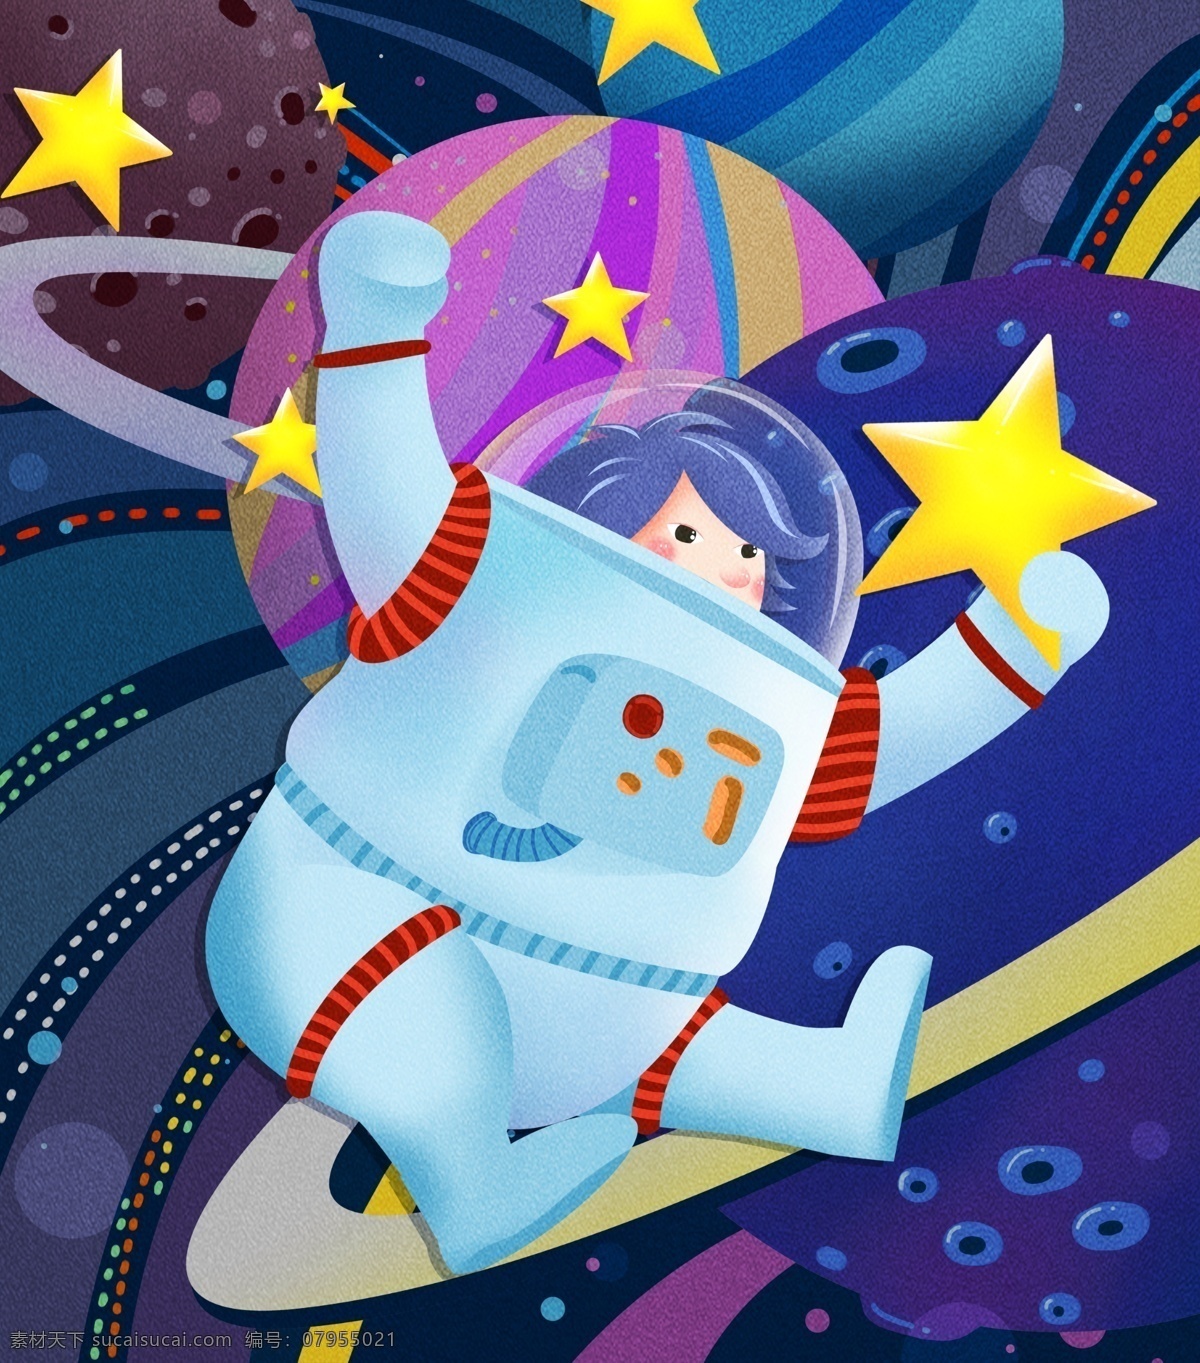 宇宙 奇妙 之旅 卡通 肌理 写实 风格 插画 系列 遨游 高清图 科幻 psd格式 航宇员 摘星 写实卡通手绘